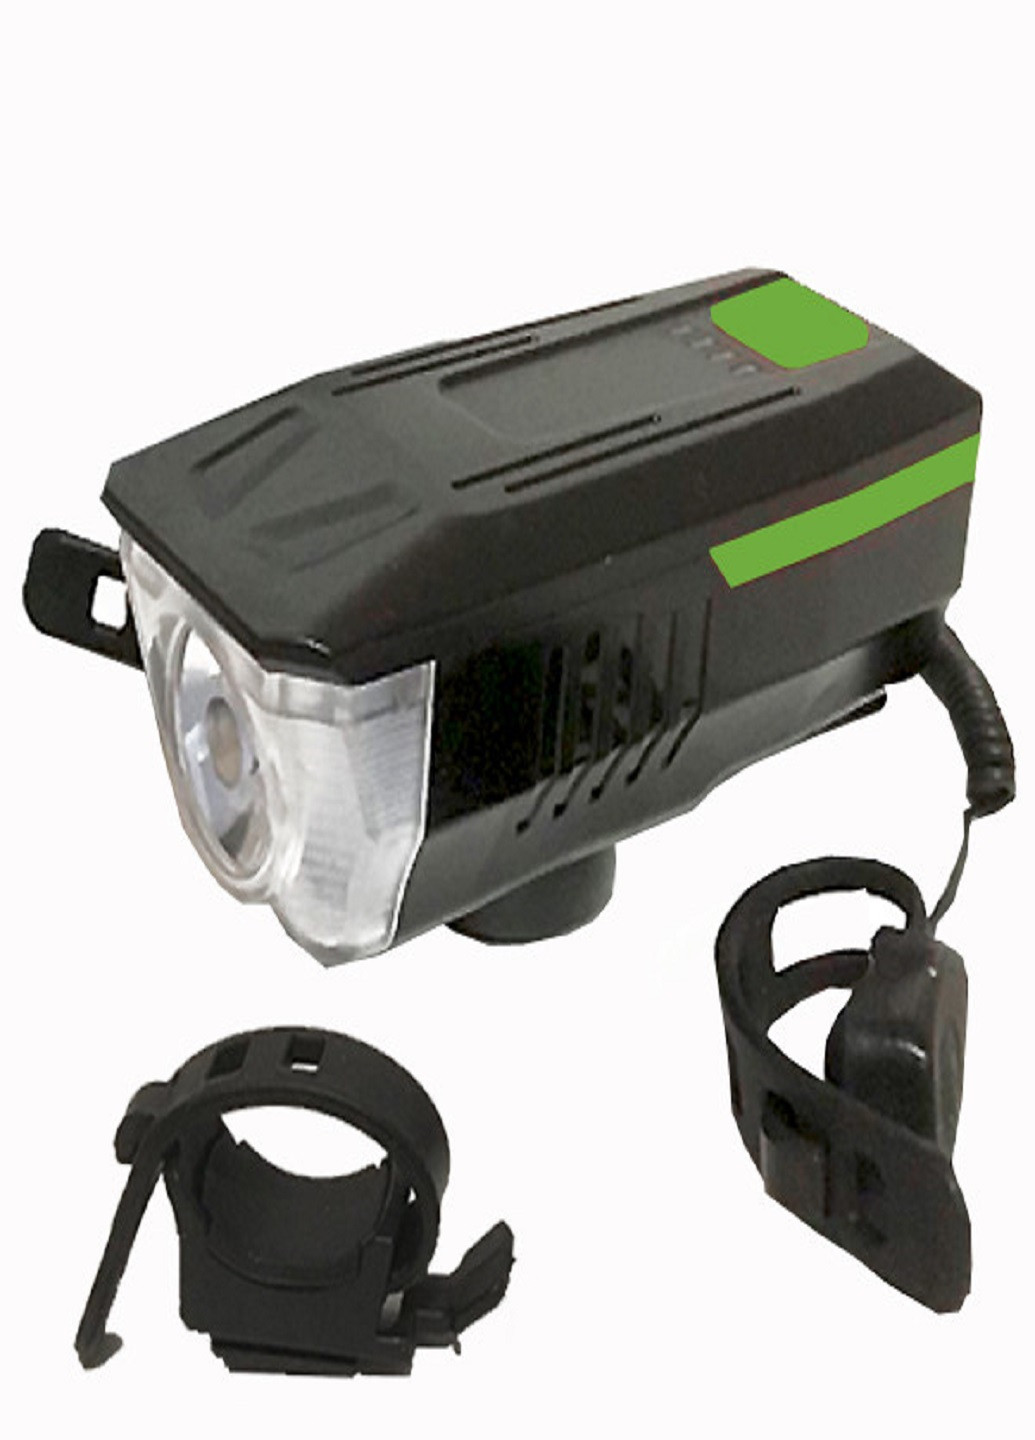 Универсальный аккумуляторный фонарь велосипедный LY-16 влагостойкий со звонком с креплением на руль Зеленый VTech (253495650)